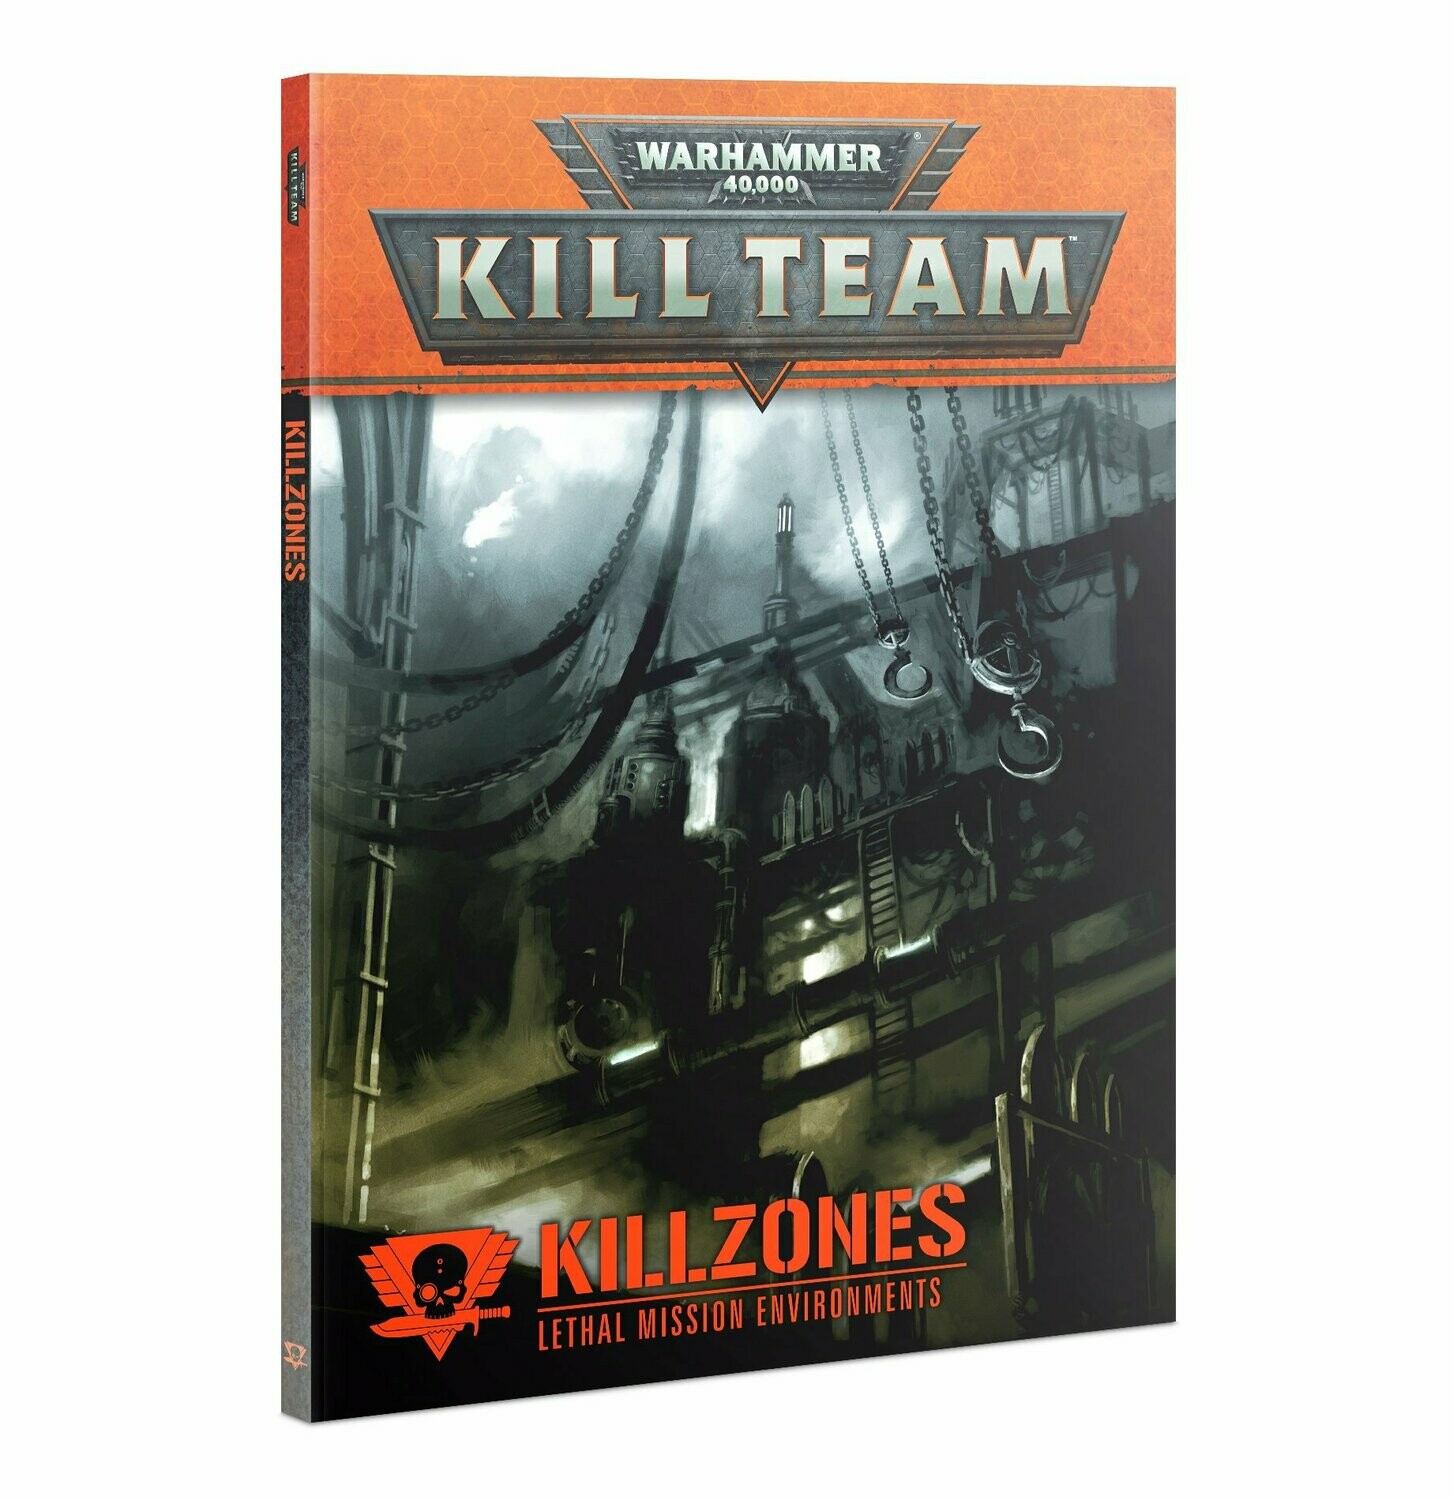 Warhammer 40000: Kill Team Killzones - Missioni in ambienti letali